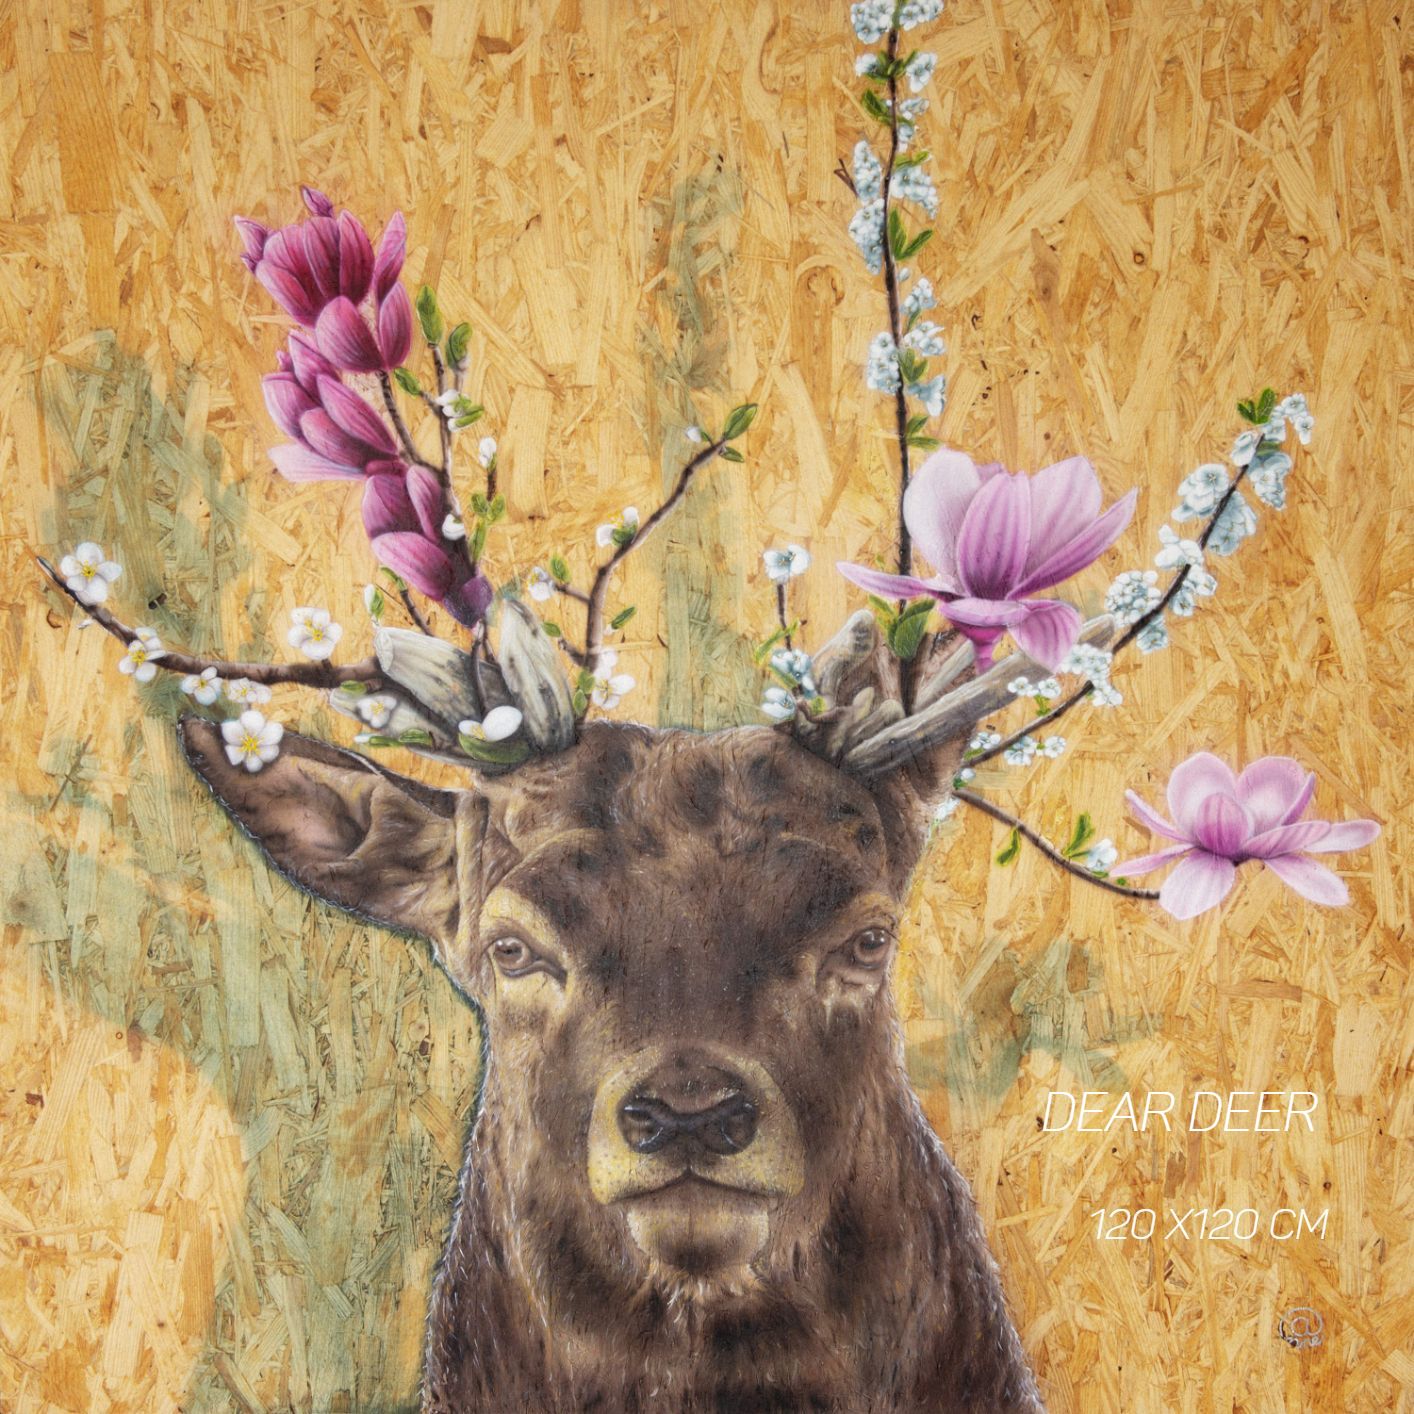 It's Spring Dear Deer